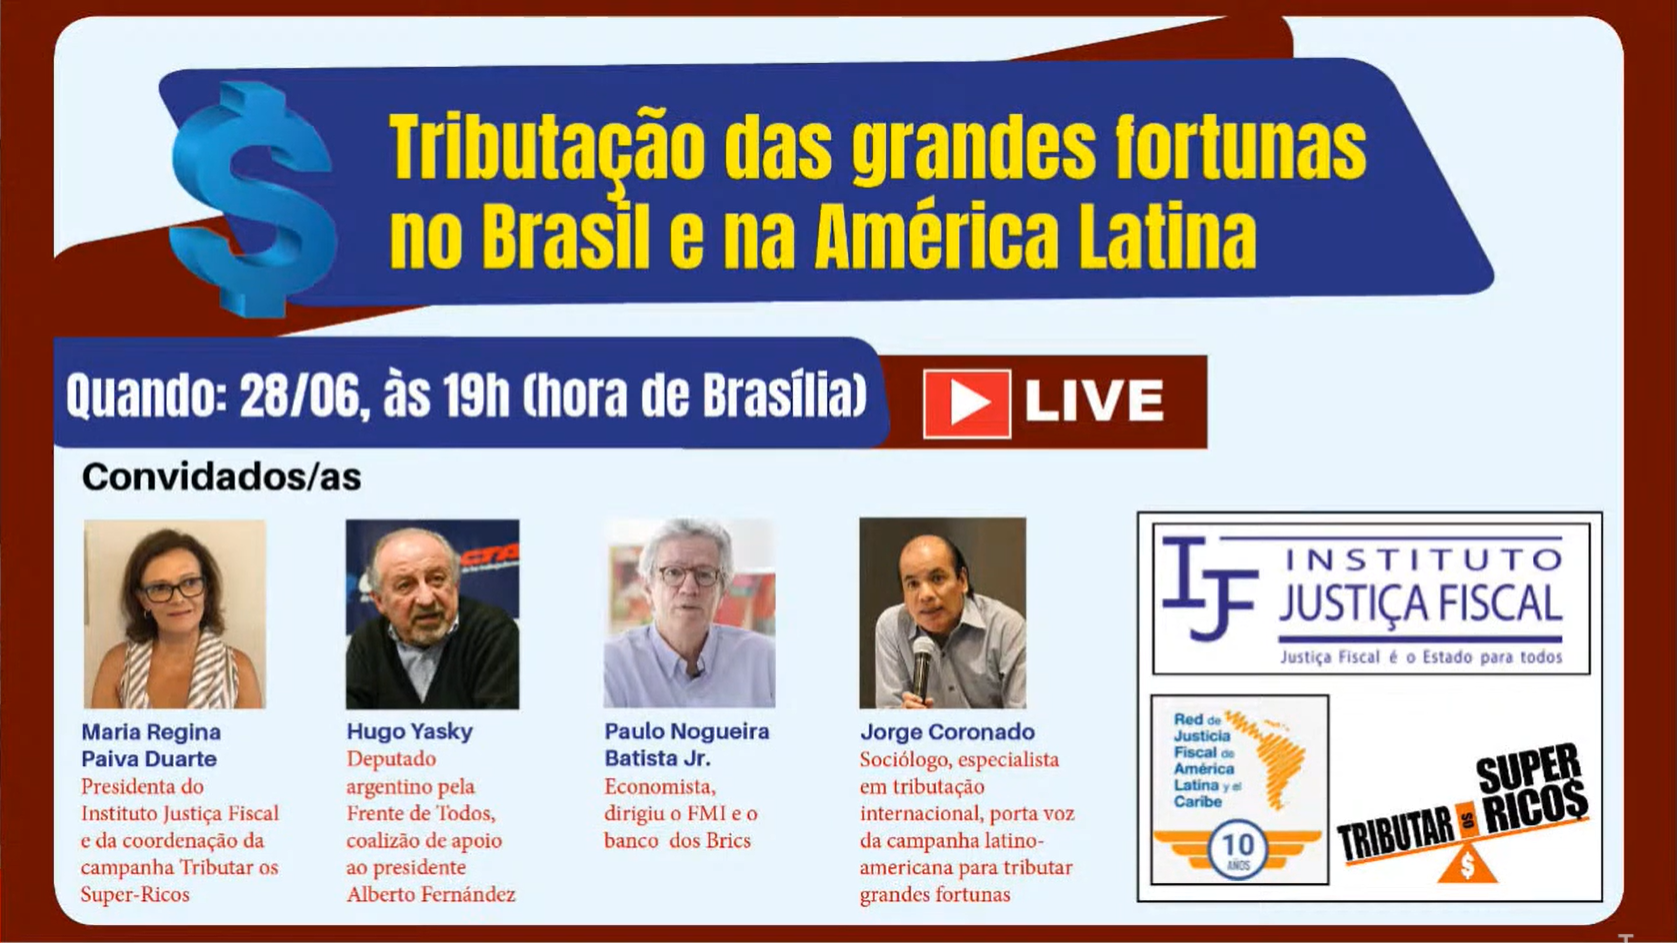 Tributação das grandes fortunas no Brasil e na América Latina